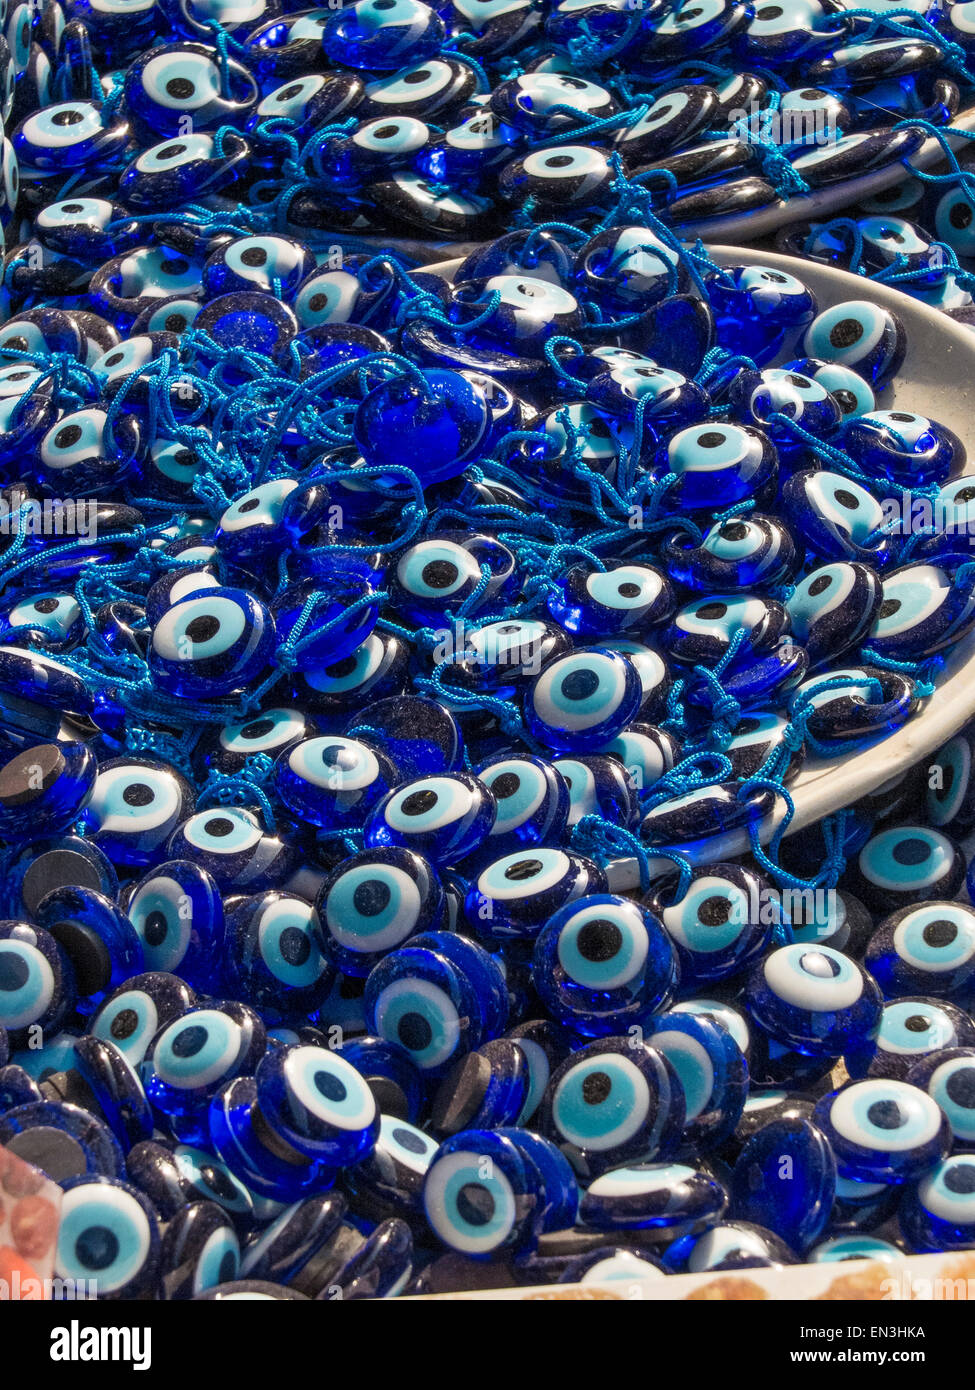 Nazar - türkisches Auge-förmigen Amulett zum Schutz gegen den